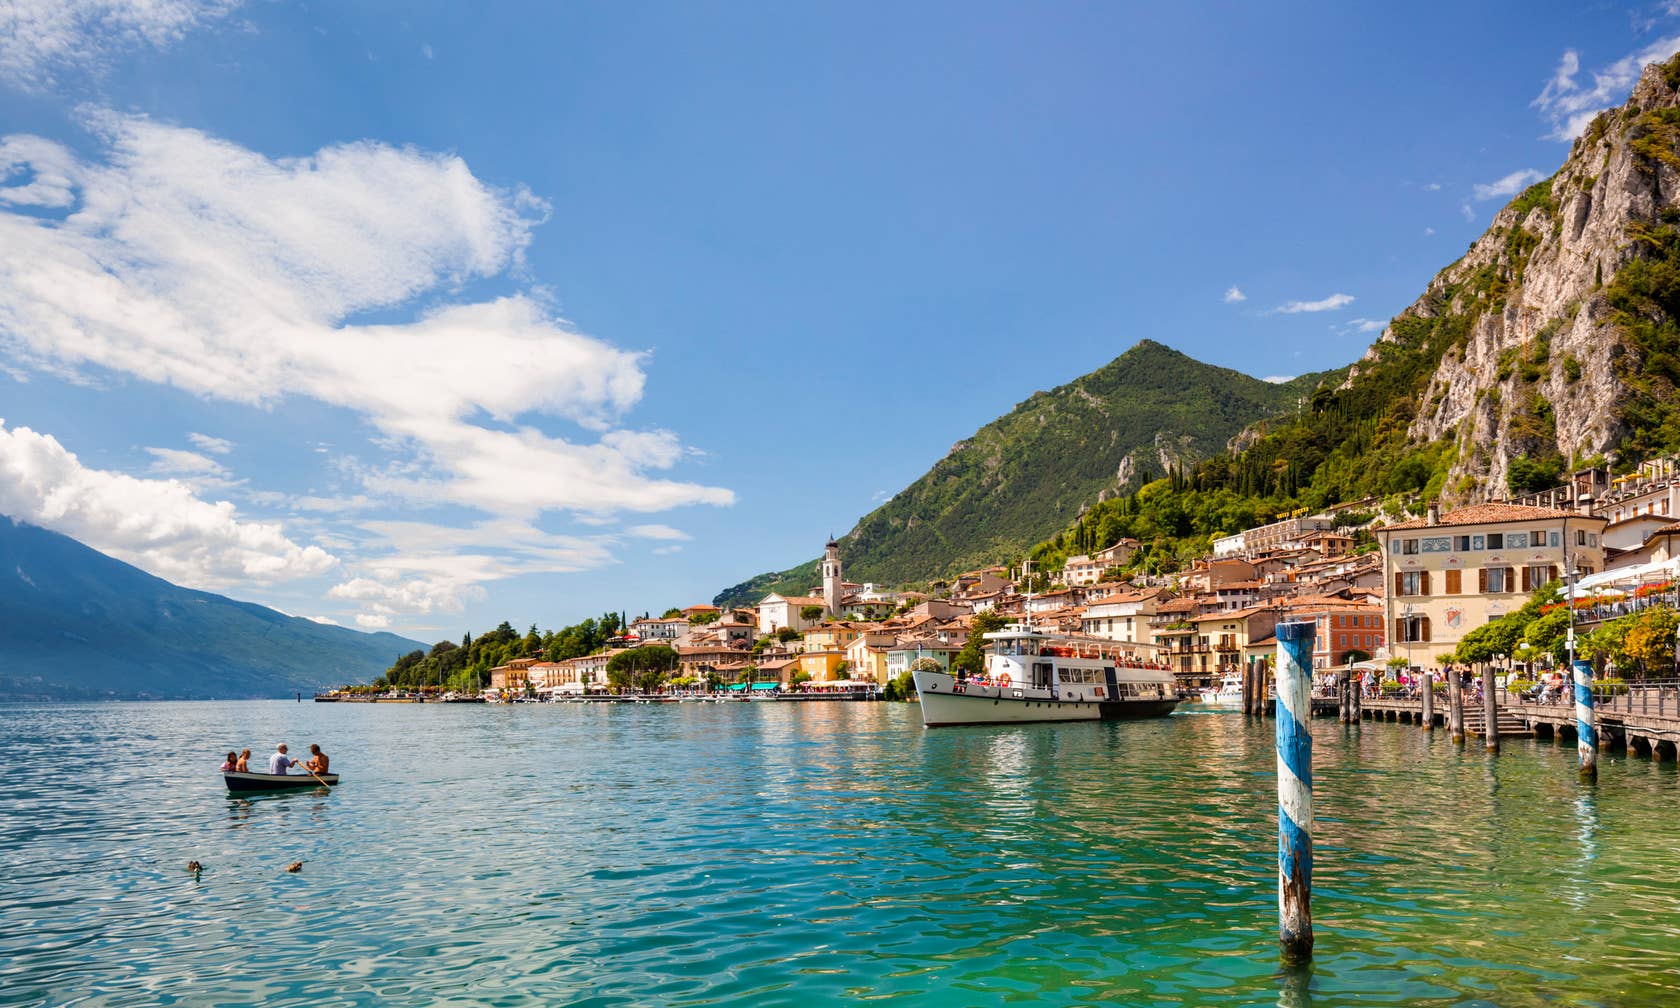 Affitti per le vacanze a Lago di Garda